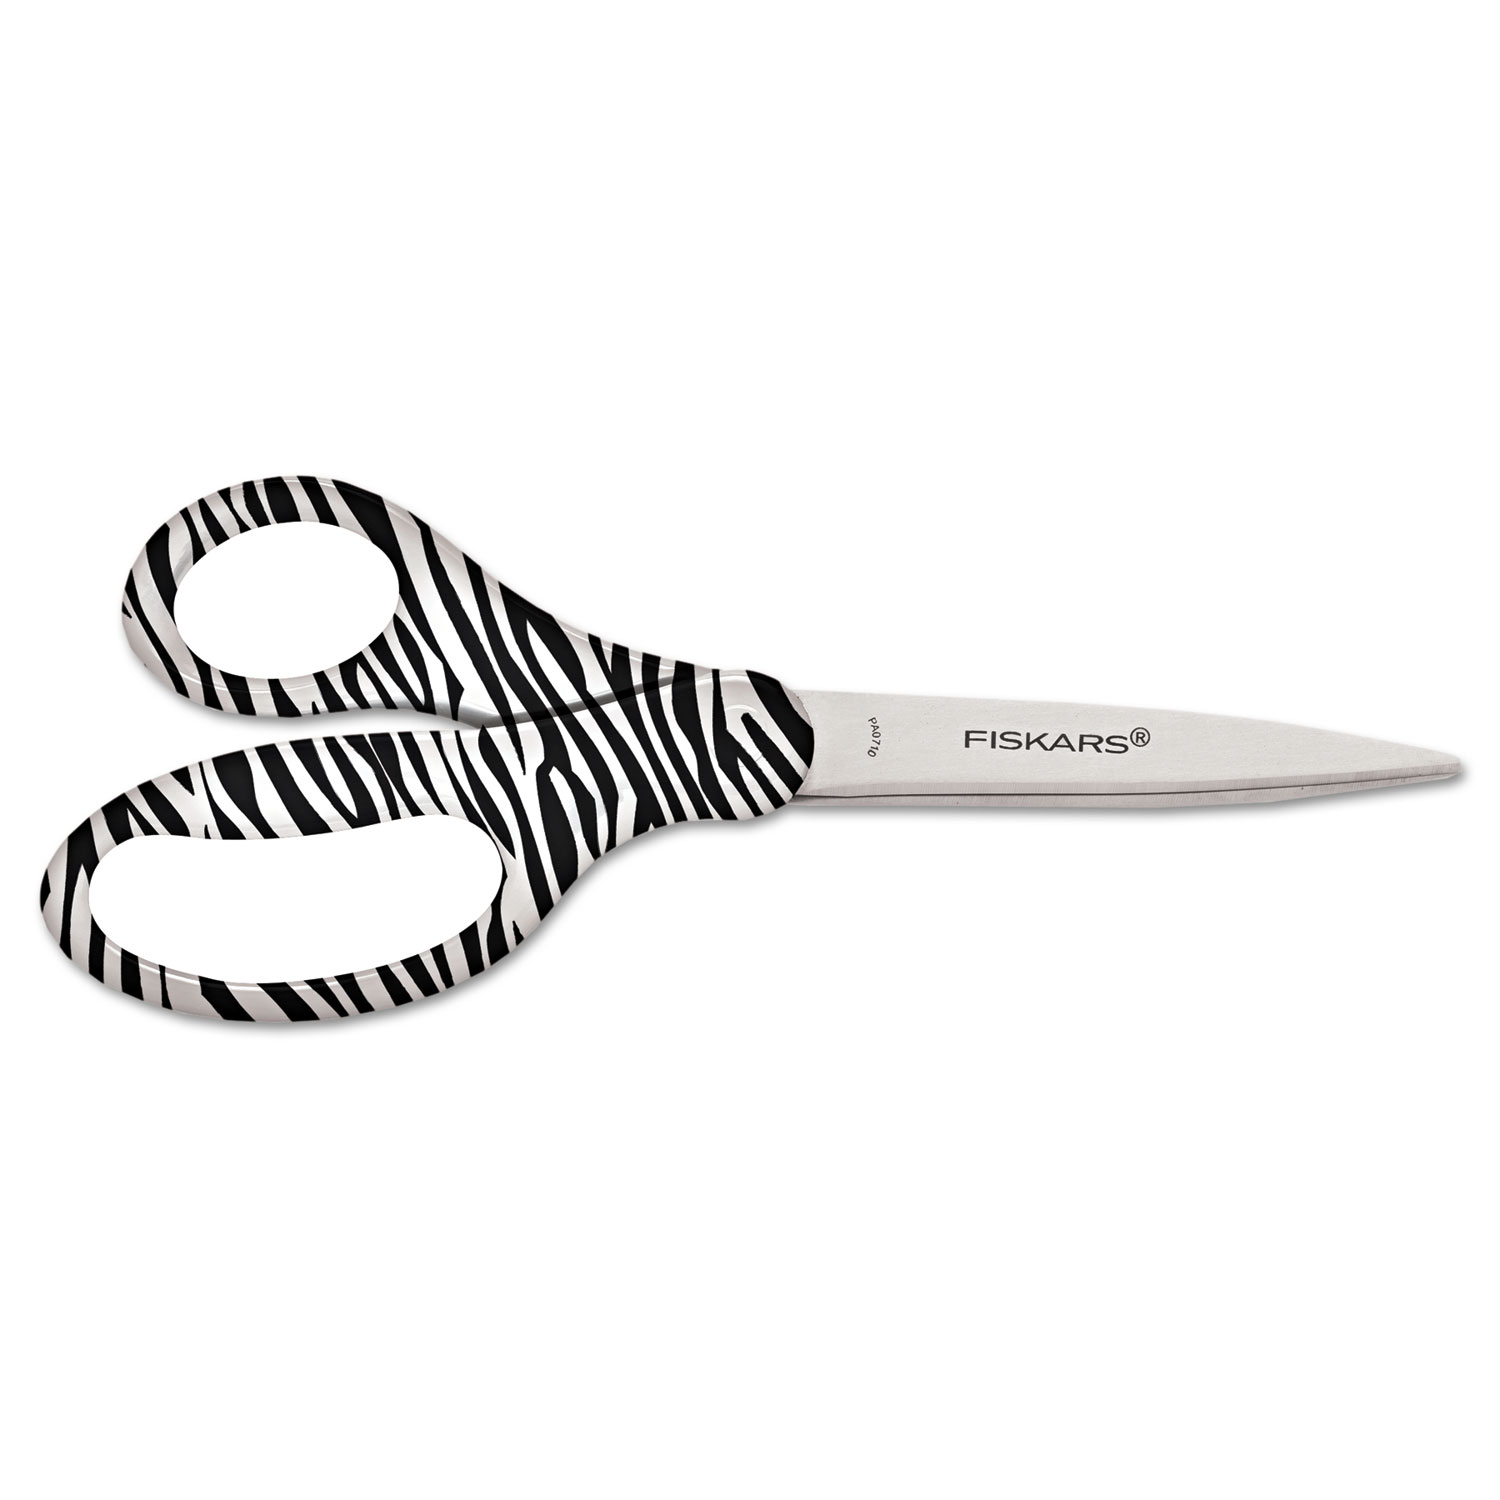  Fiskars 153582-1002 Performance Designer Zebra Scissors, 8 Long, 1.75 Cut Length, Black/White Straight Handle (FSK1535821002) 